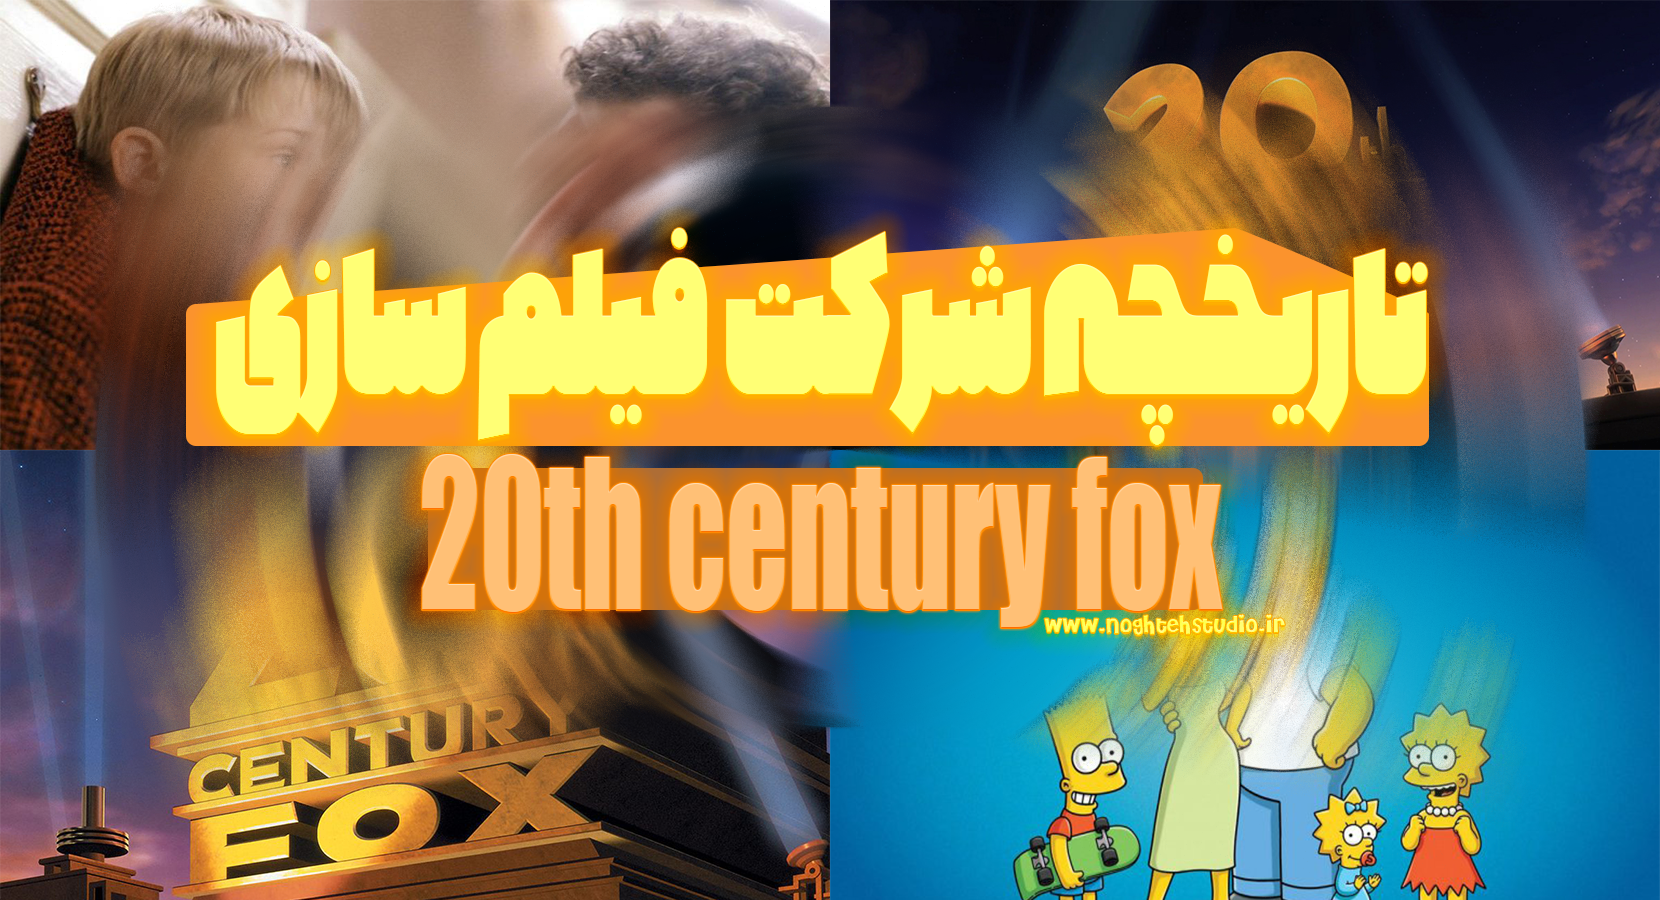 تاریخچه شرکت فیلم سازی 20th century fox